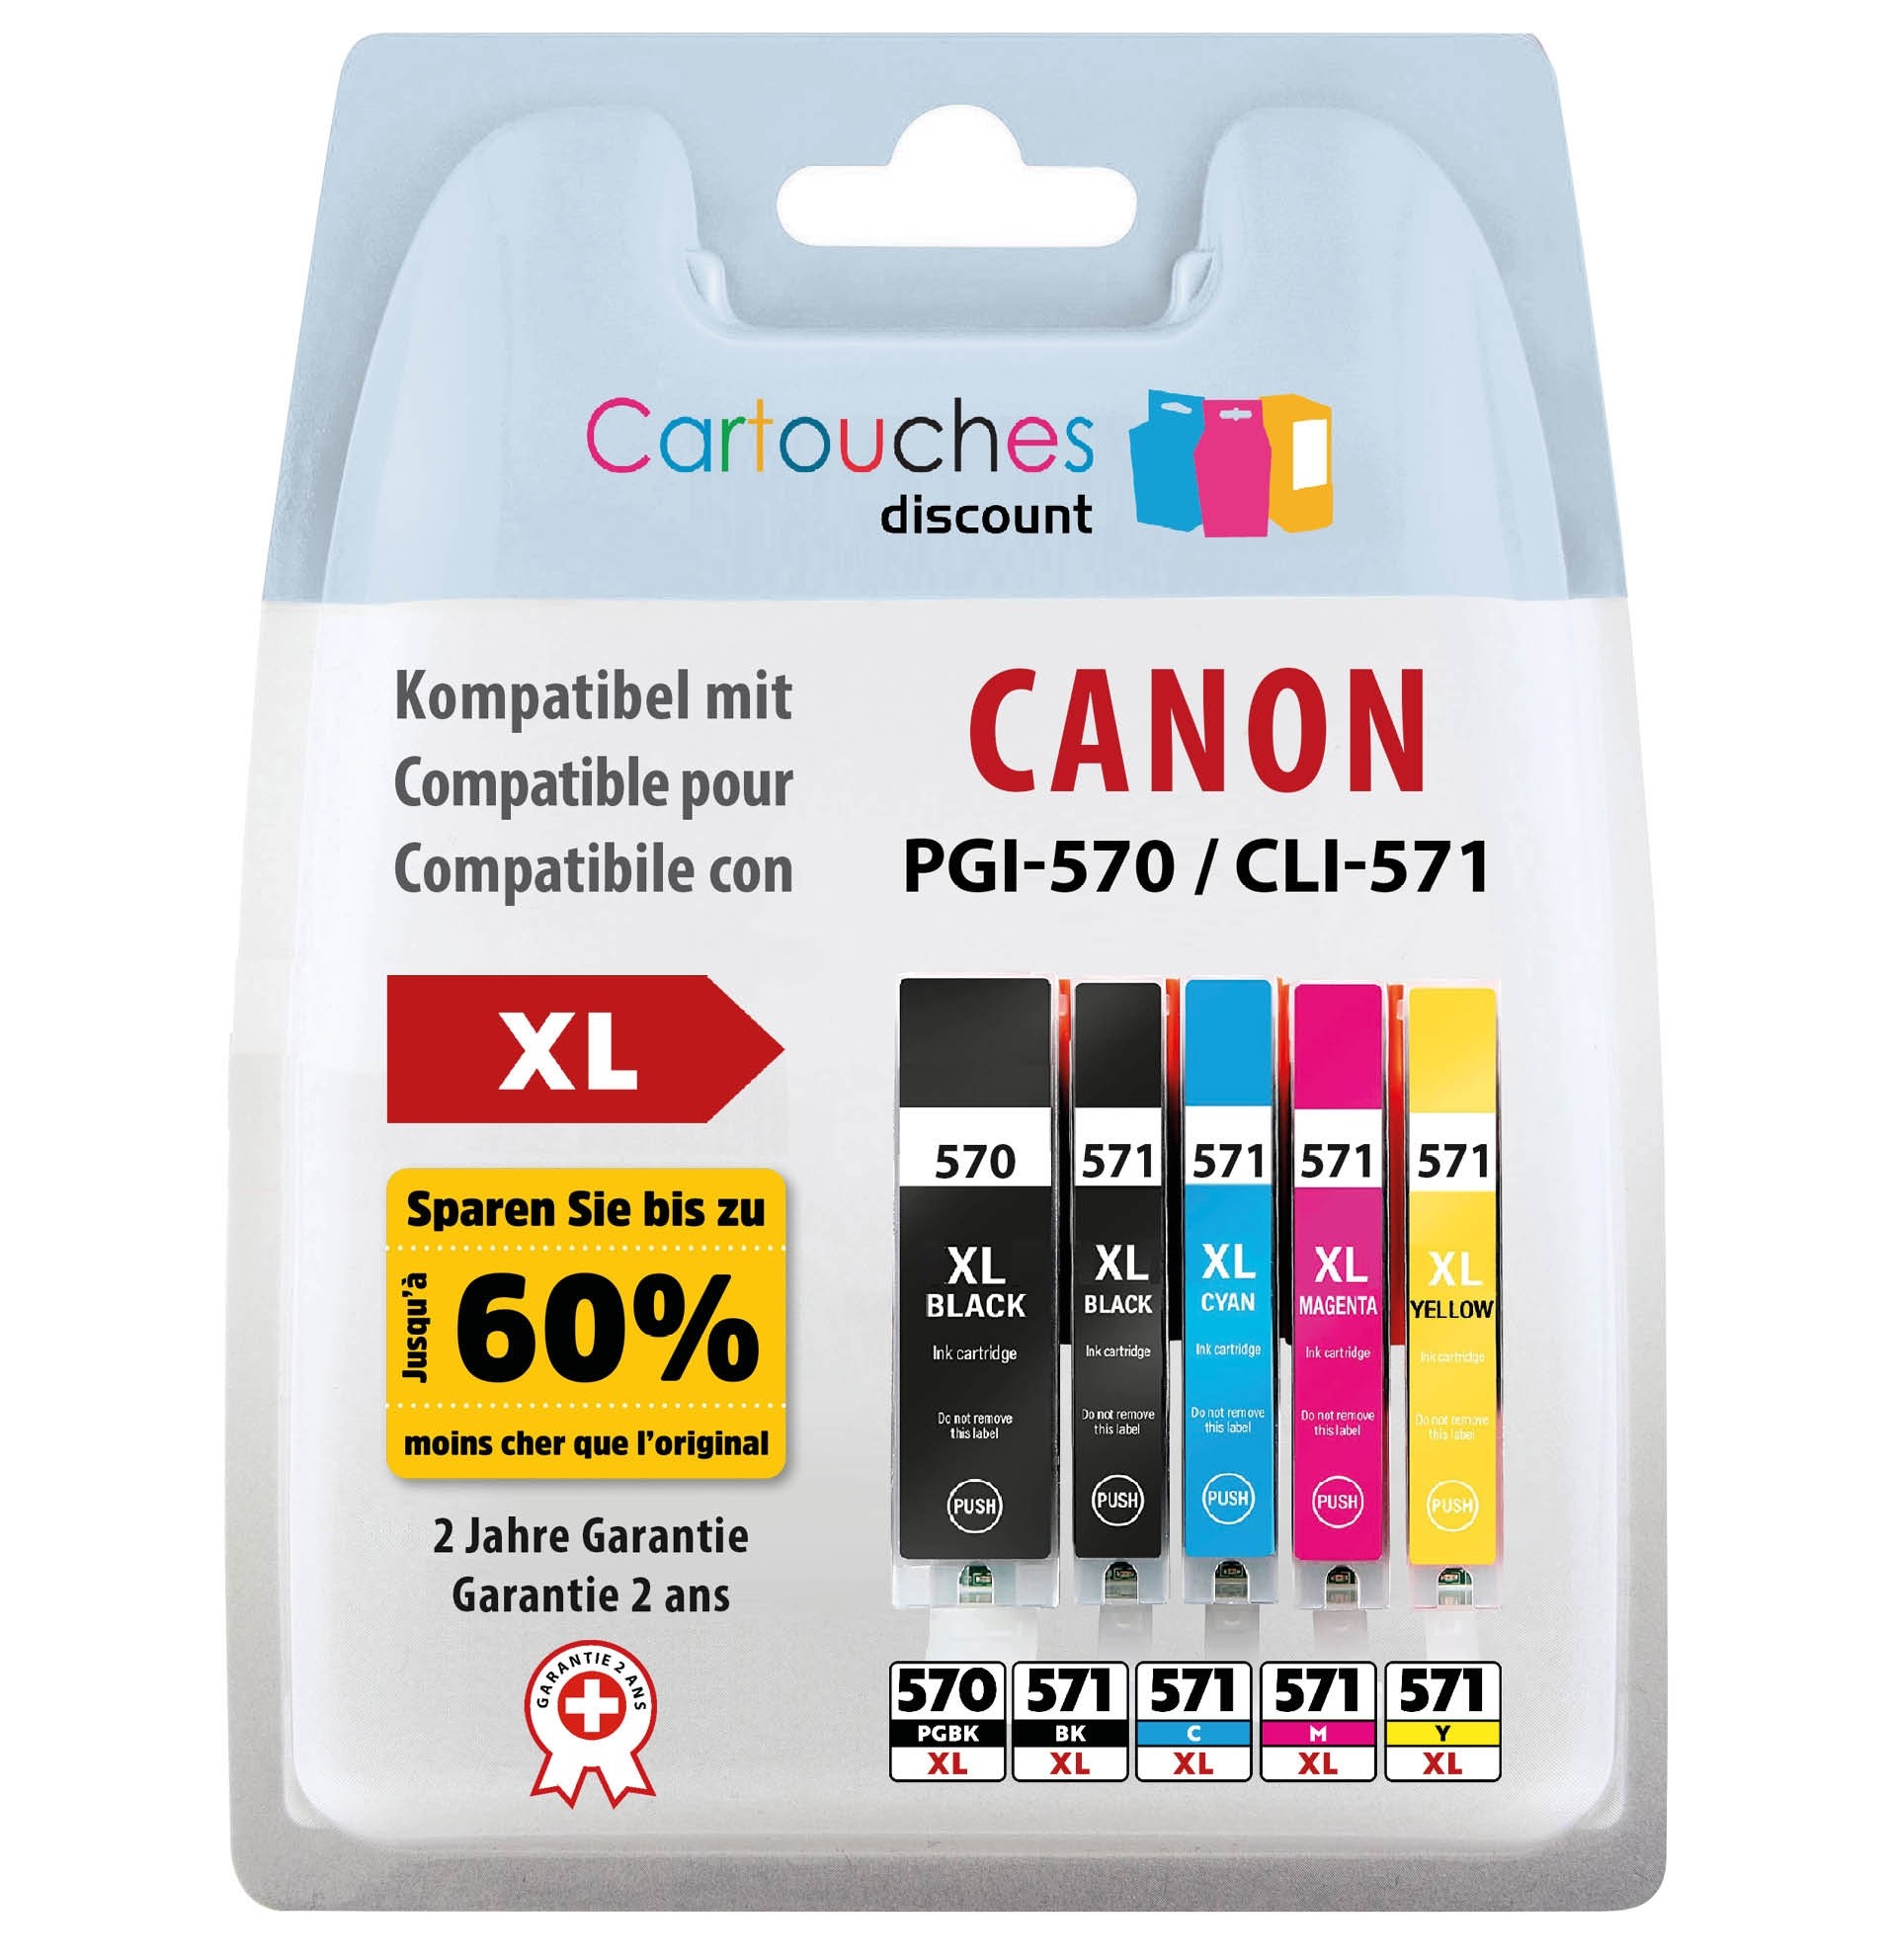 Pour Canon PGI 570 XL / CLI 571 XL (1 sets de 5 cartouches) + la